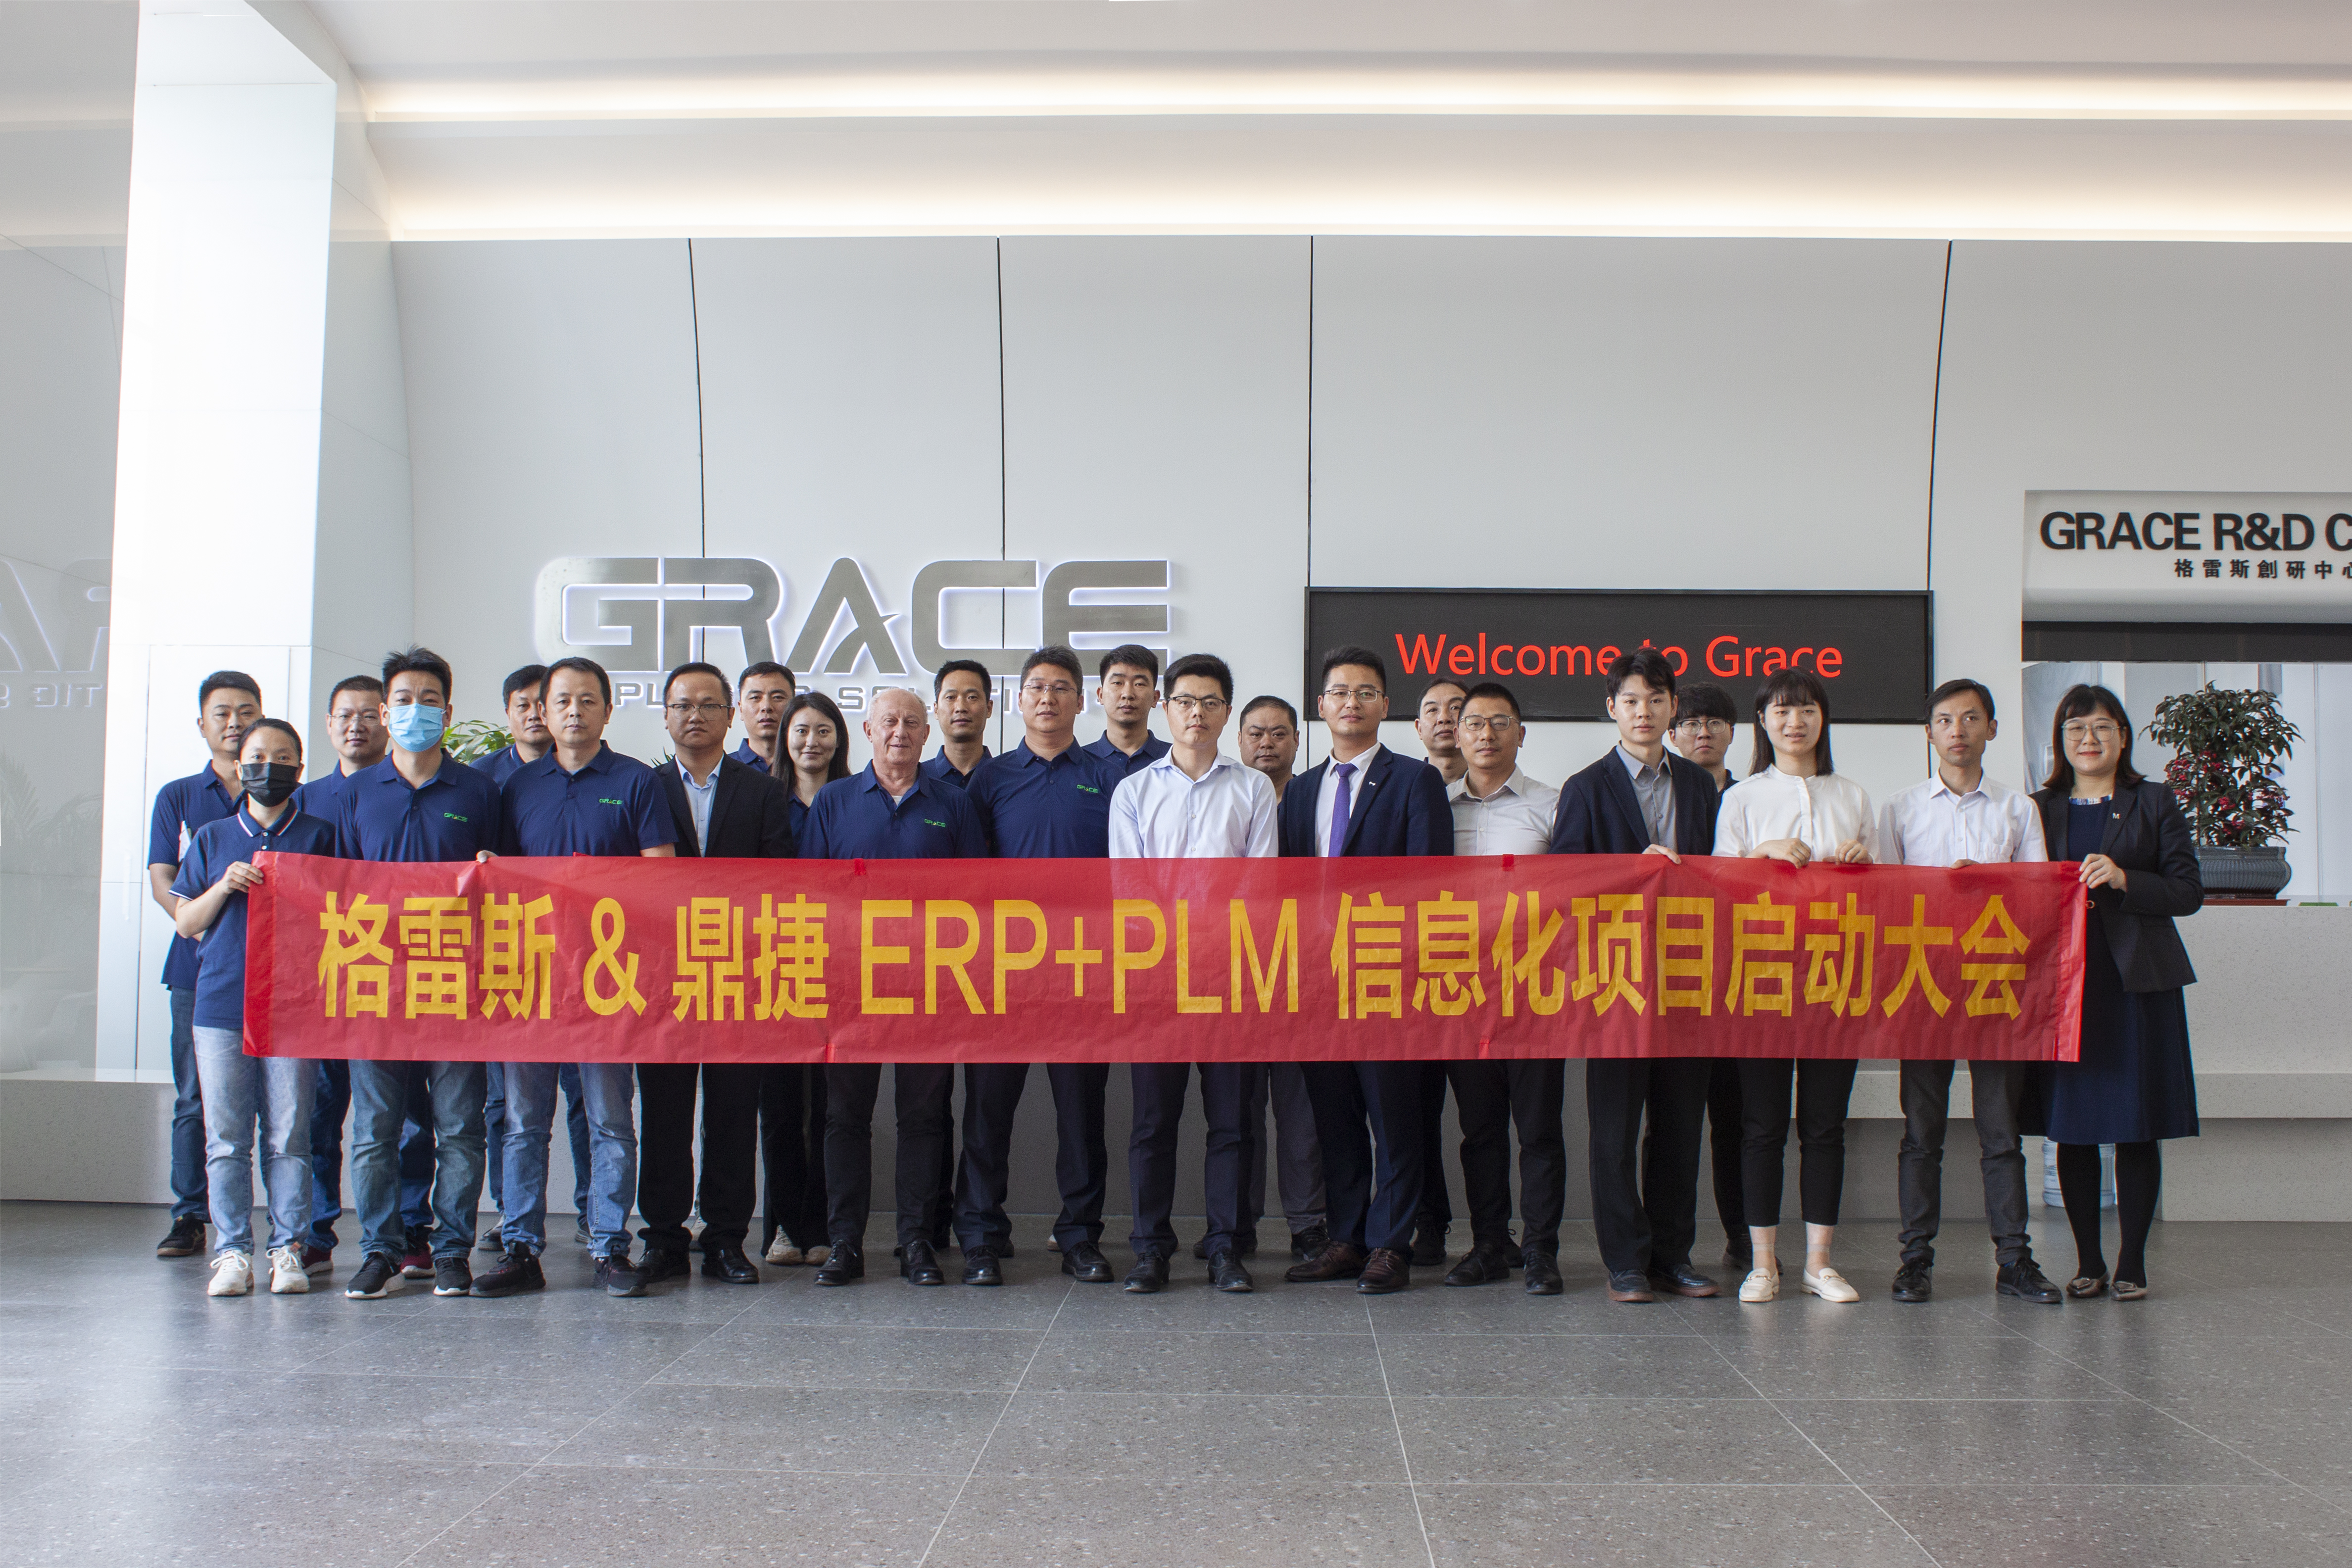 Η εναρκτήρια συνάντηση του έργου ERP και PLM πραγματοποιήθηκε με επιτυχία στο Grace